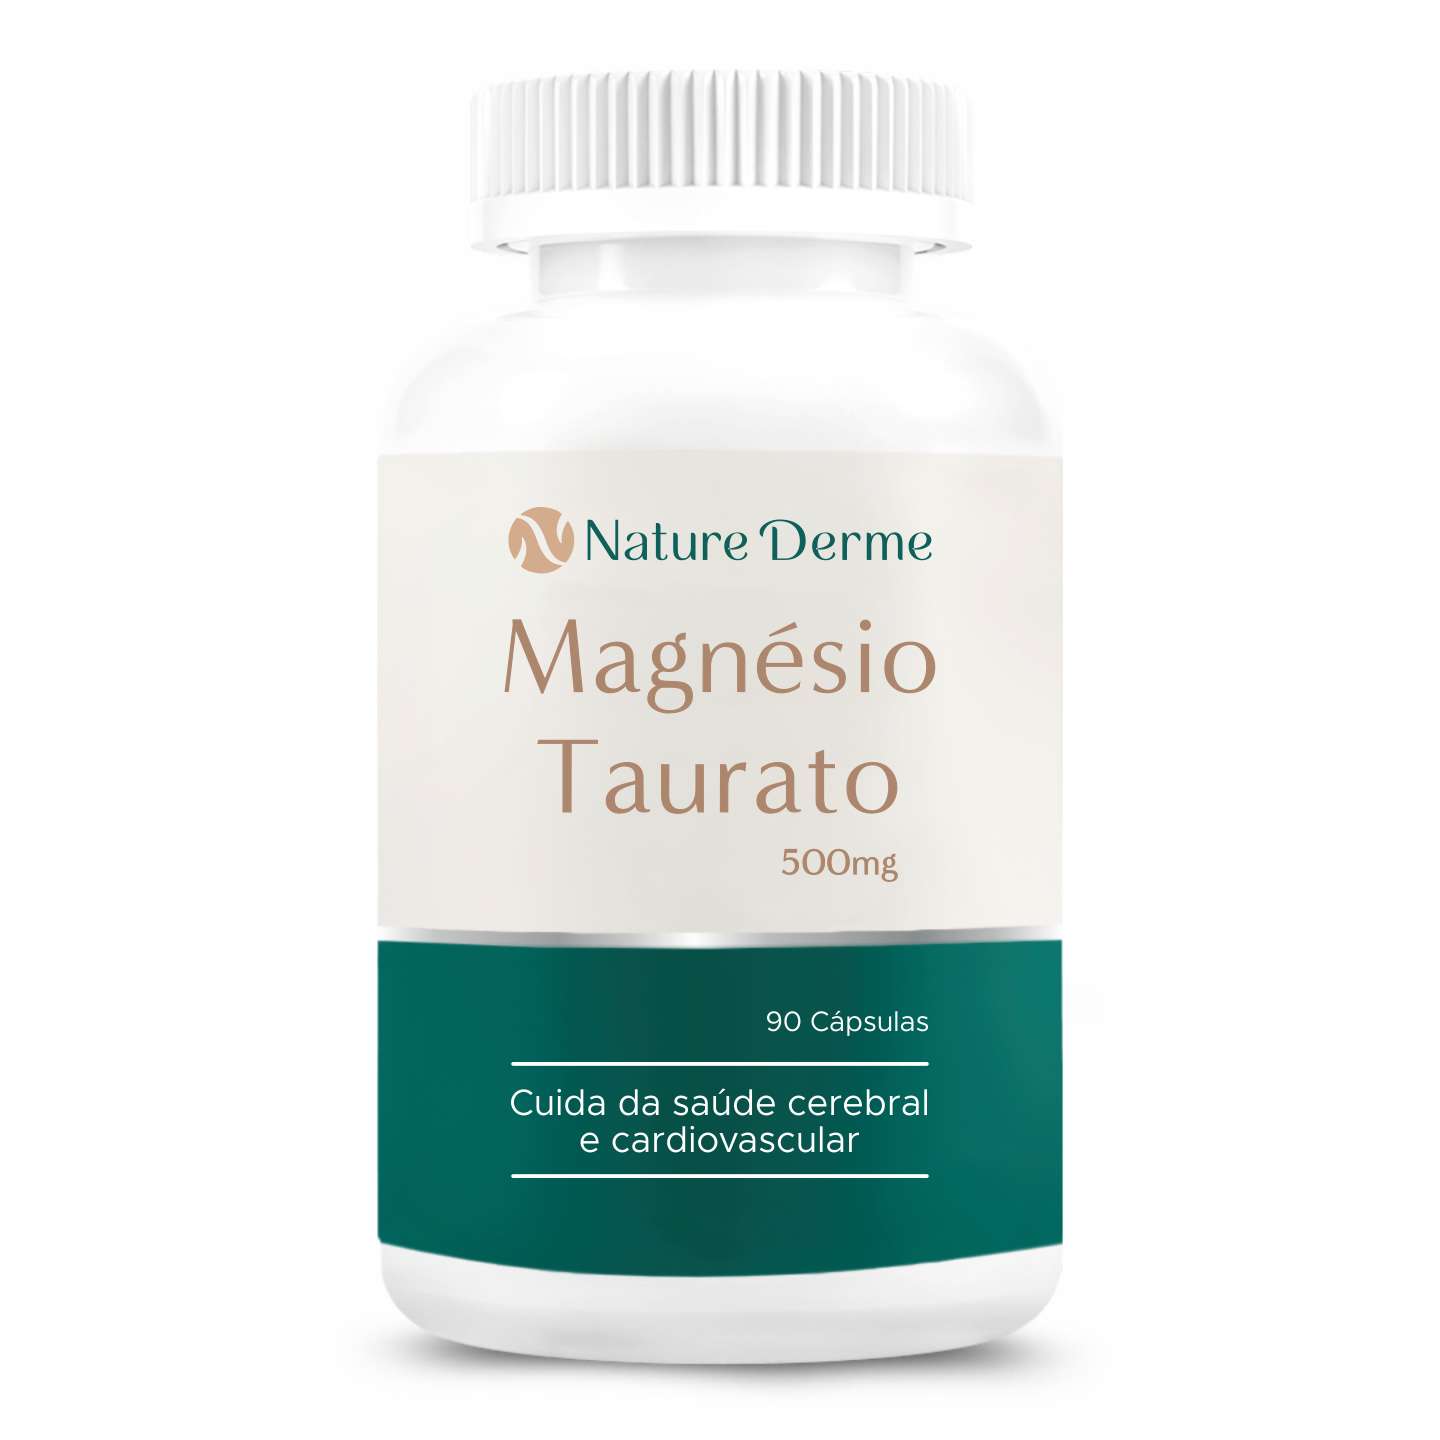 Magnésio Taurato 500mg - Saúde cardiovascular e cerebral